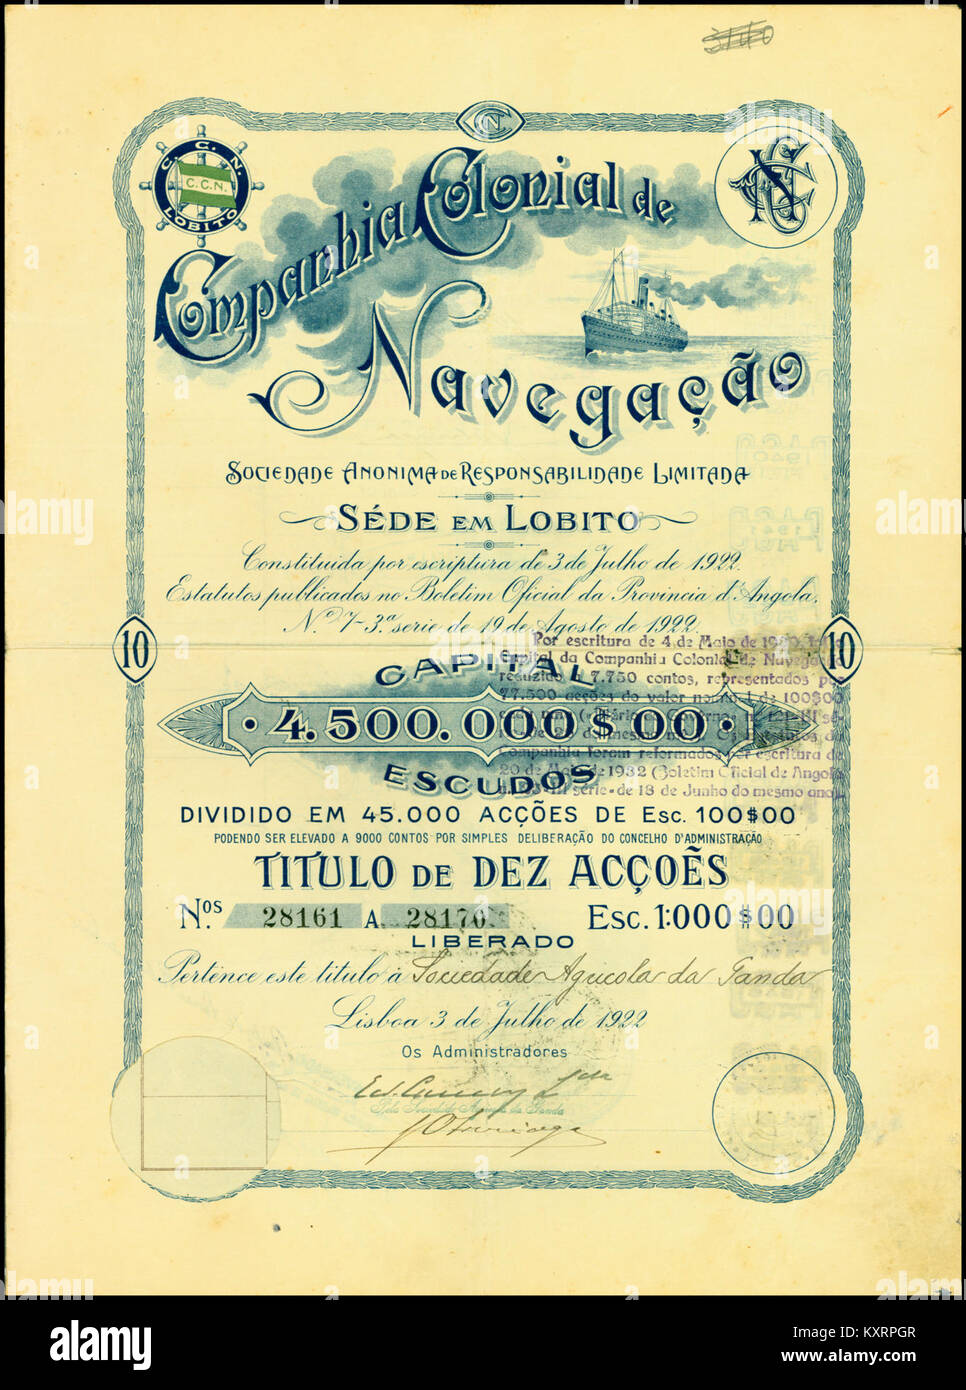 Companhia Colonial de Navegação 1922 Stock Photo